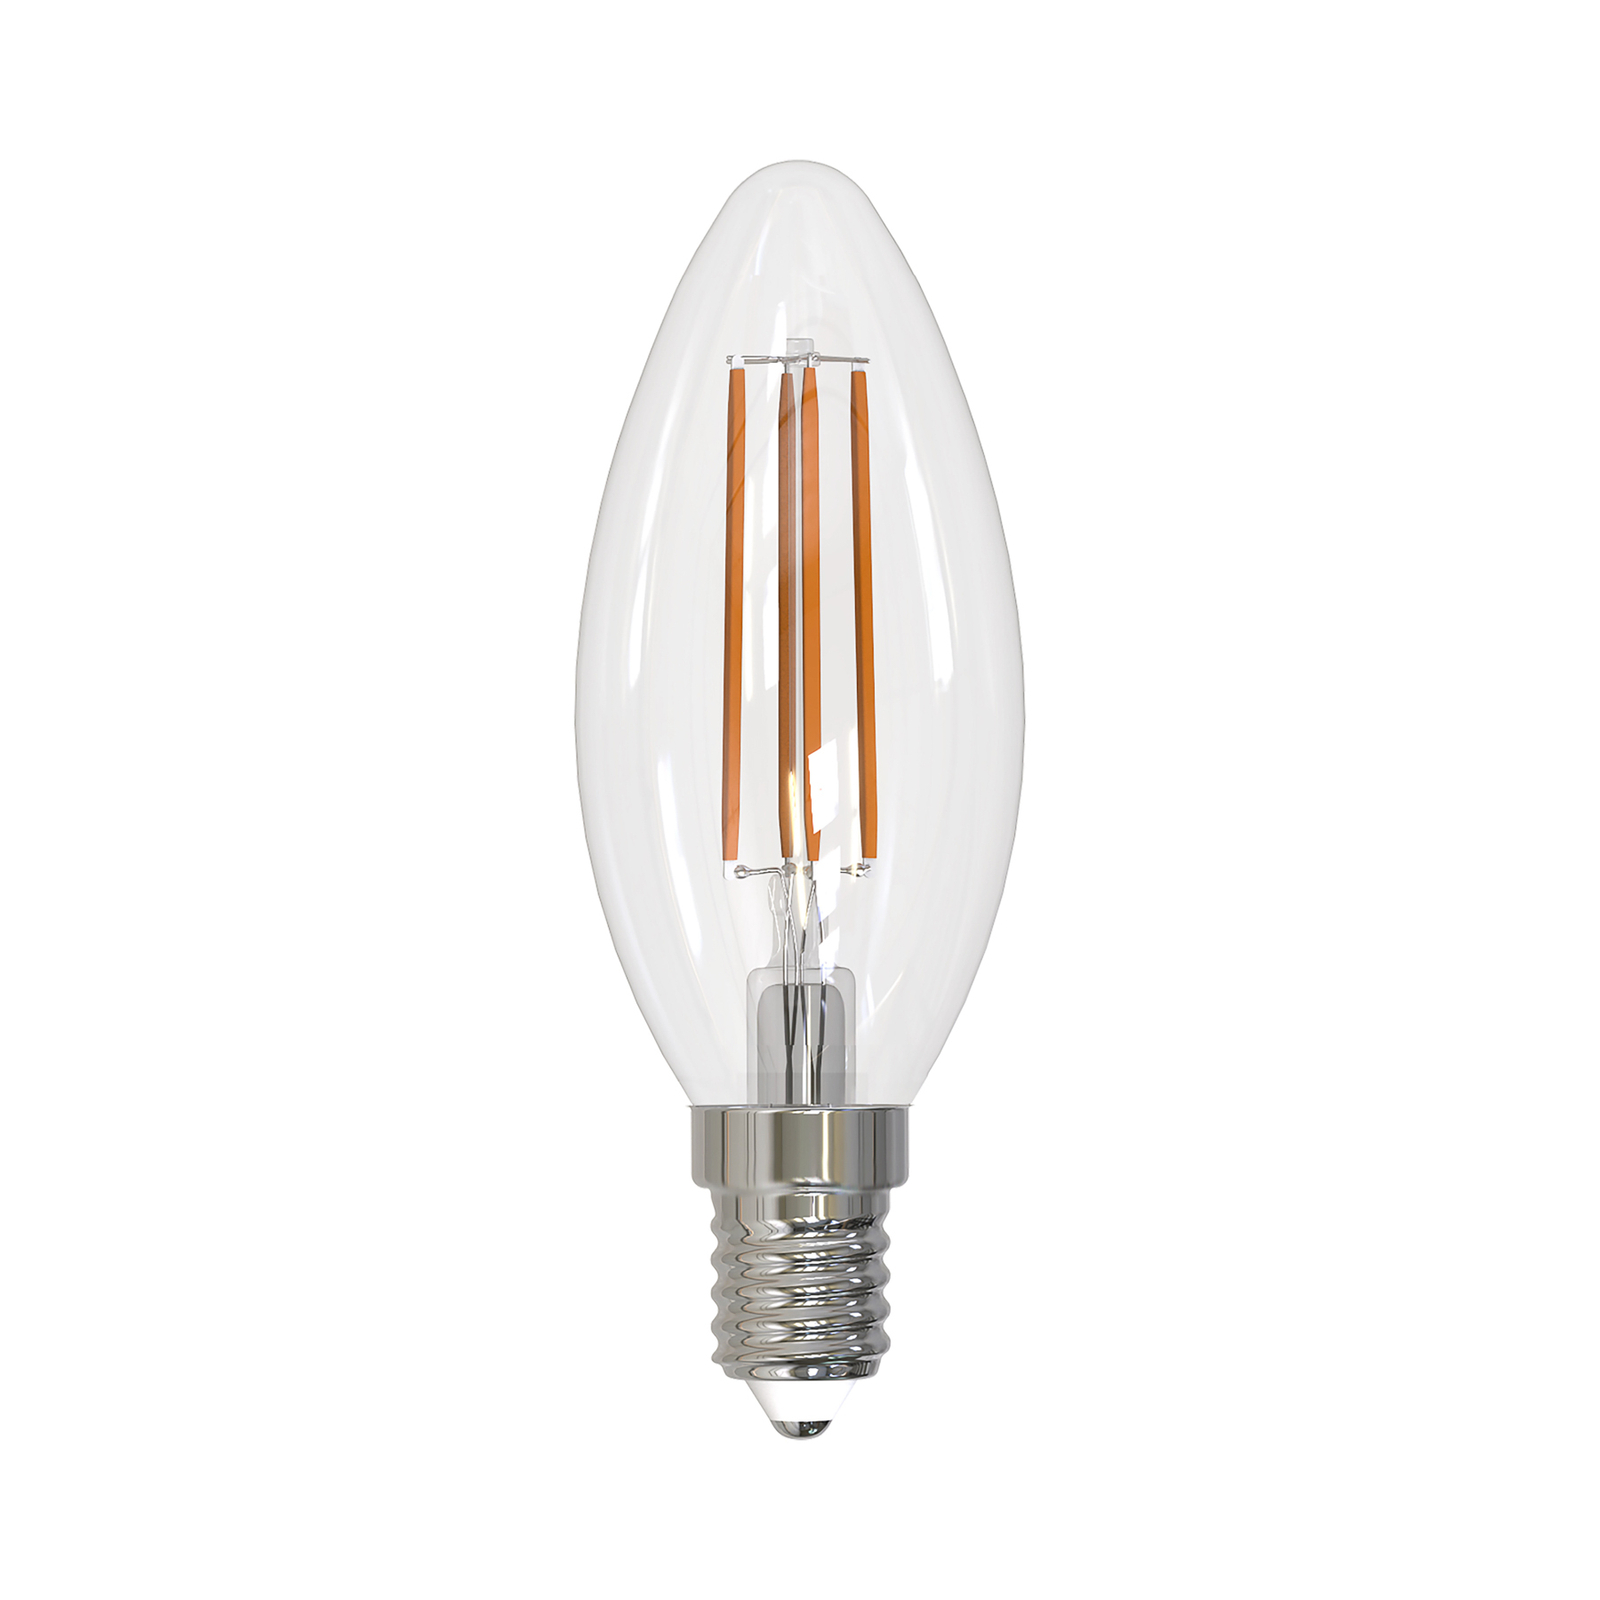 Arcchio LED žarnica z žarilno nitko E14 sveča, komplet 3 kosov, 4000 K